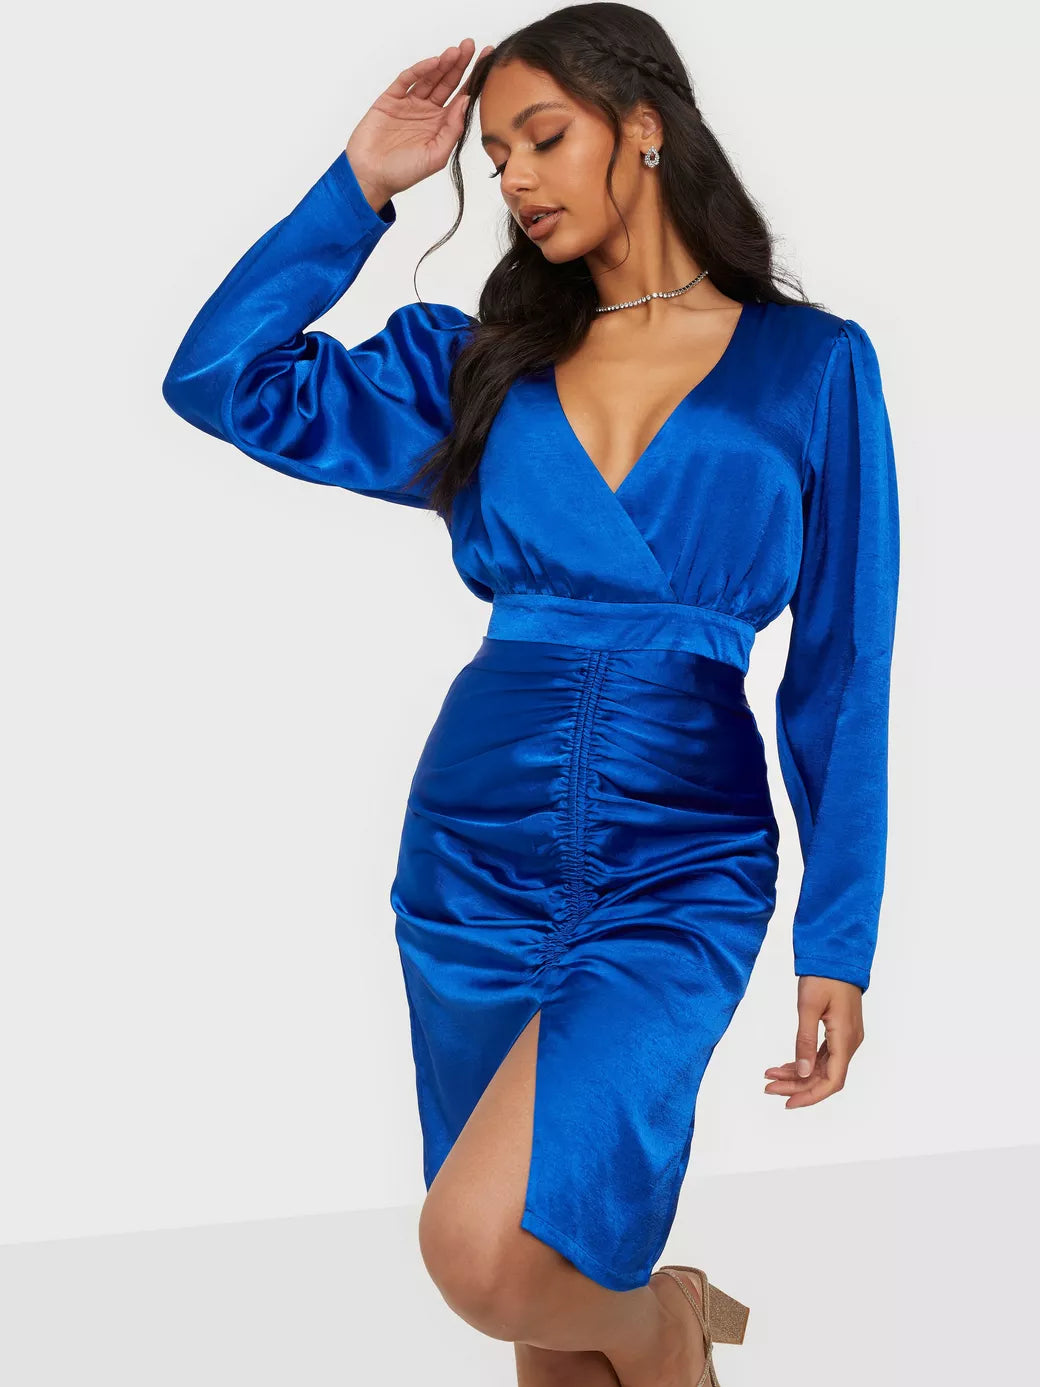 Resume Bennett Dress Crown Blue